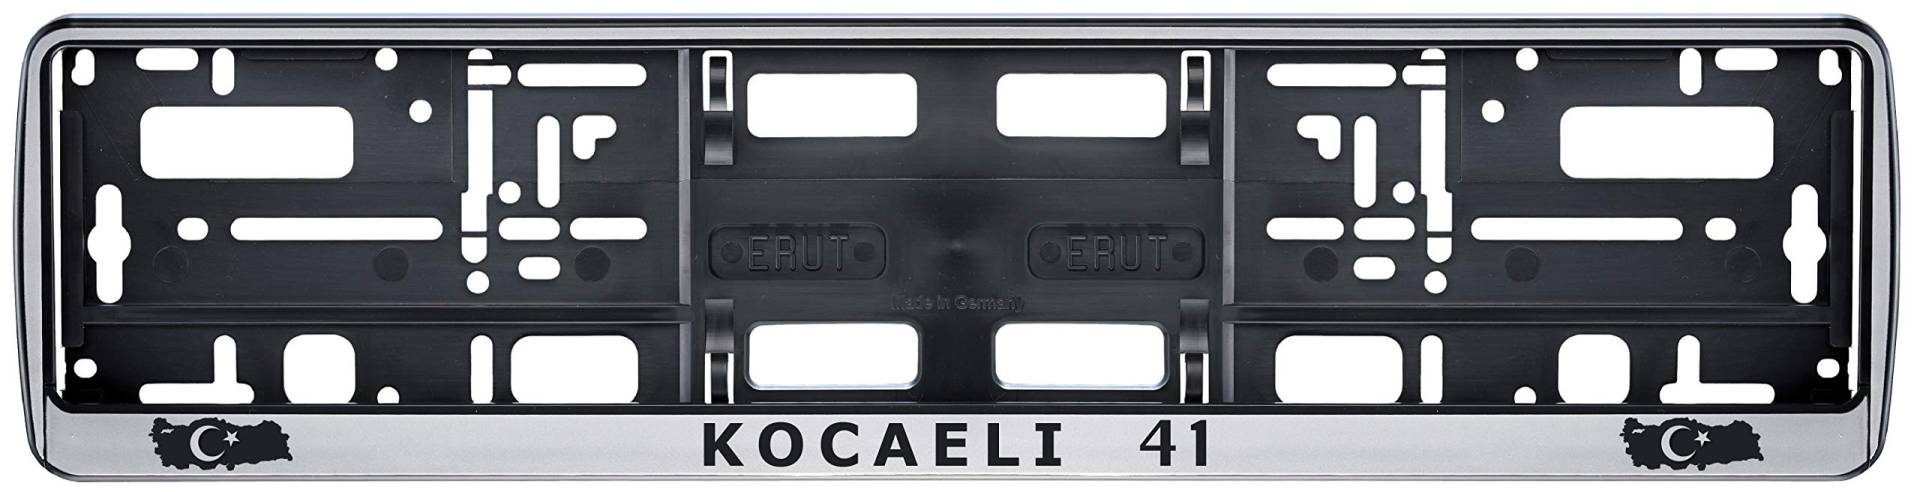 Auto Kennzeichenhalter in der Farbe Silber/Schwarz Nummernschildhalterung Auto, Nummernschildhalter Türkei Flagge 41 Kocaeli 2 Stück von Aina